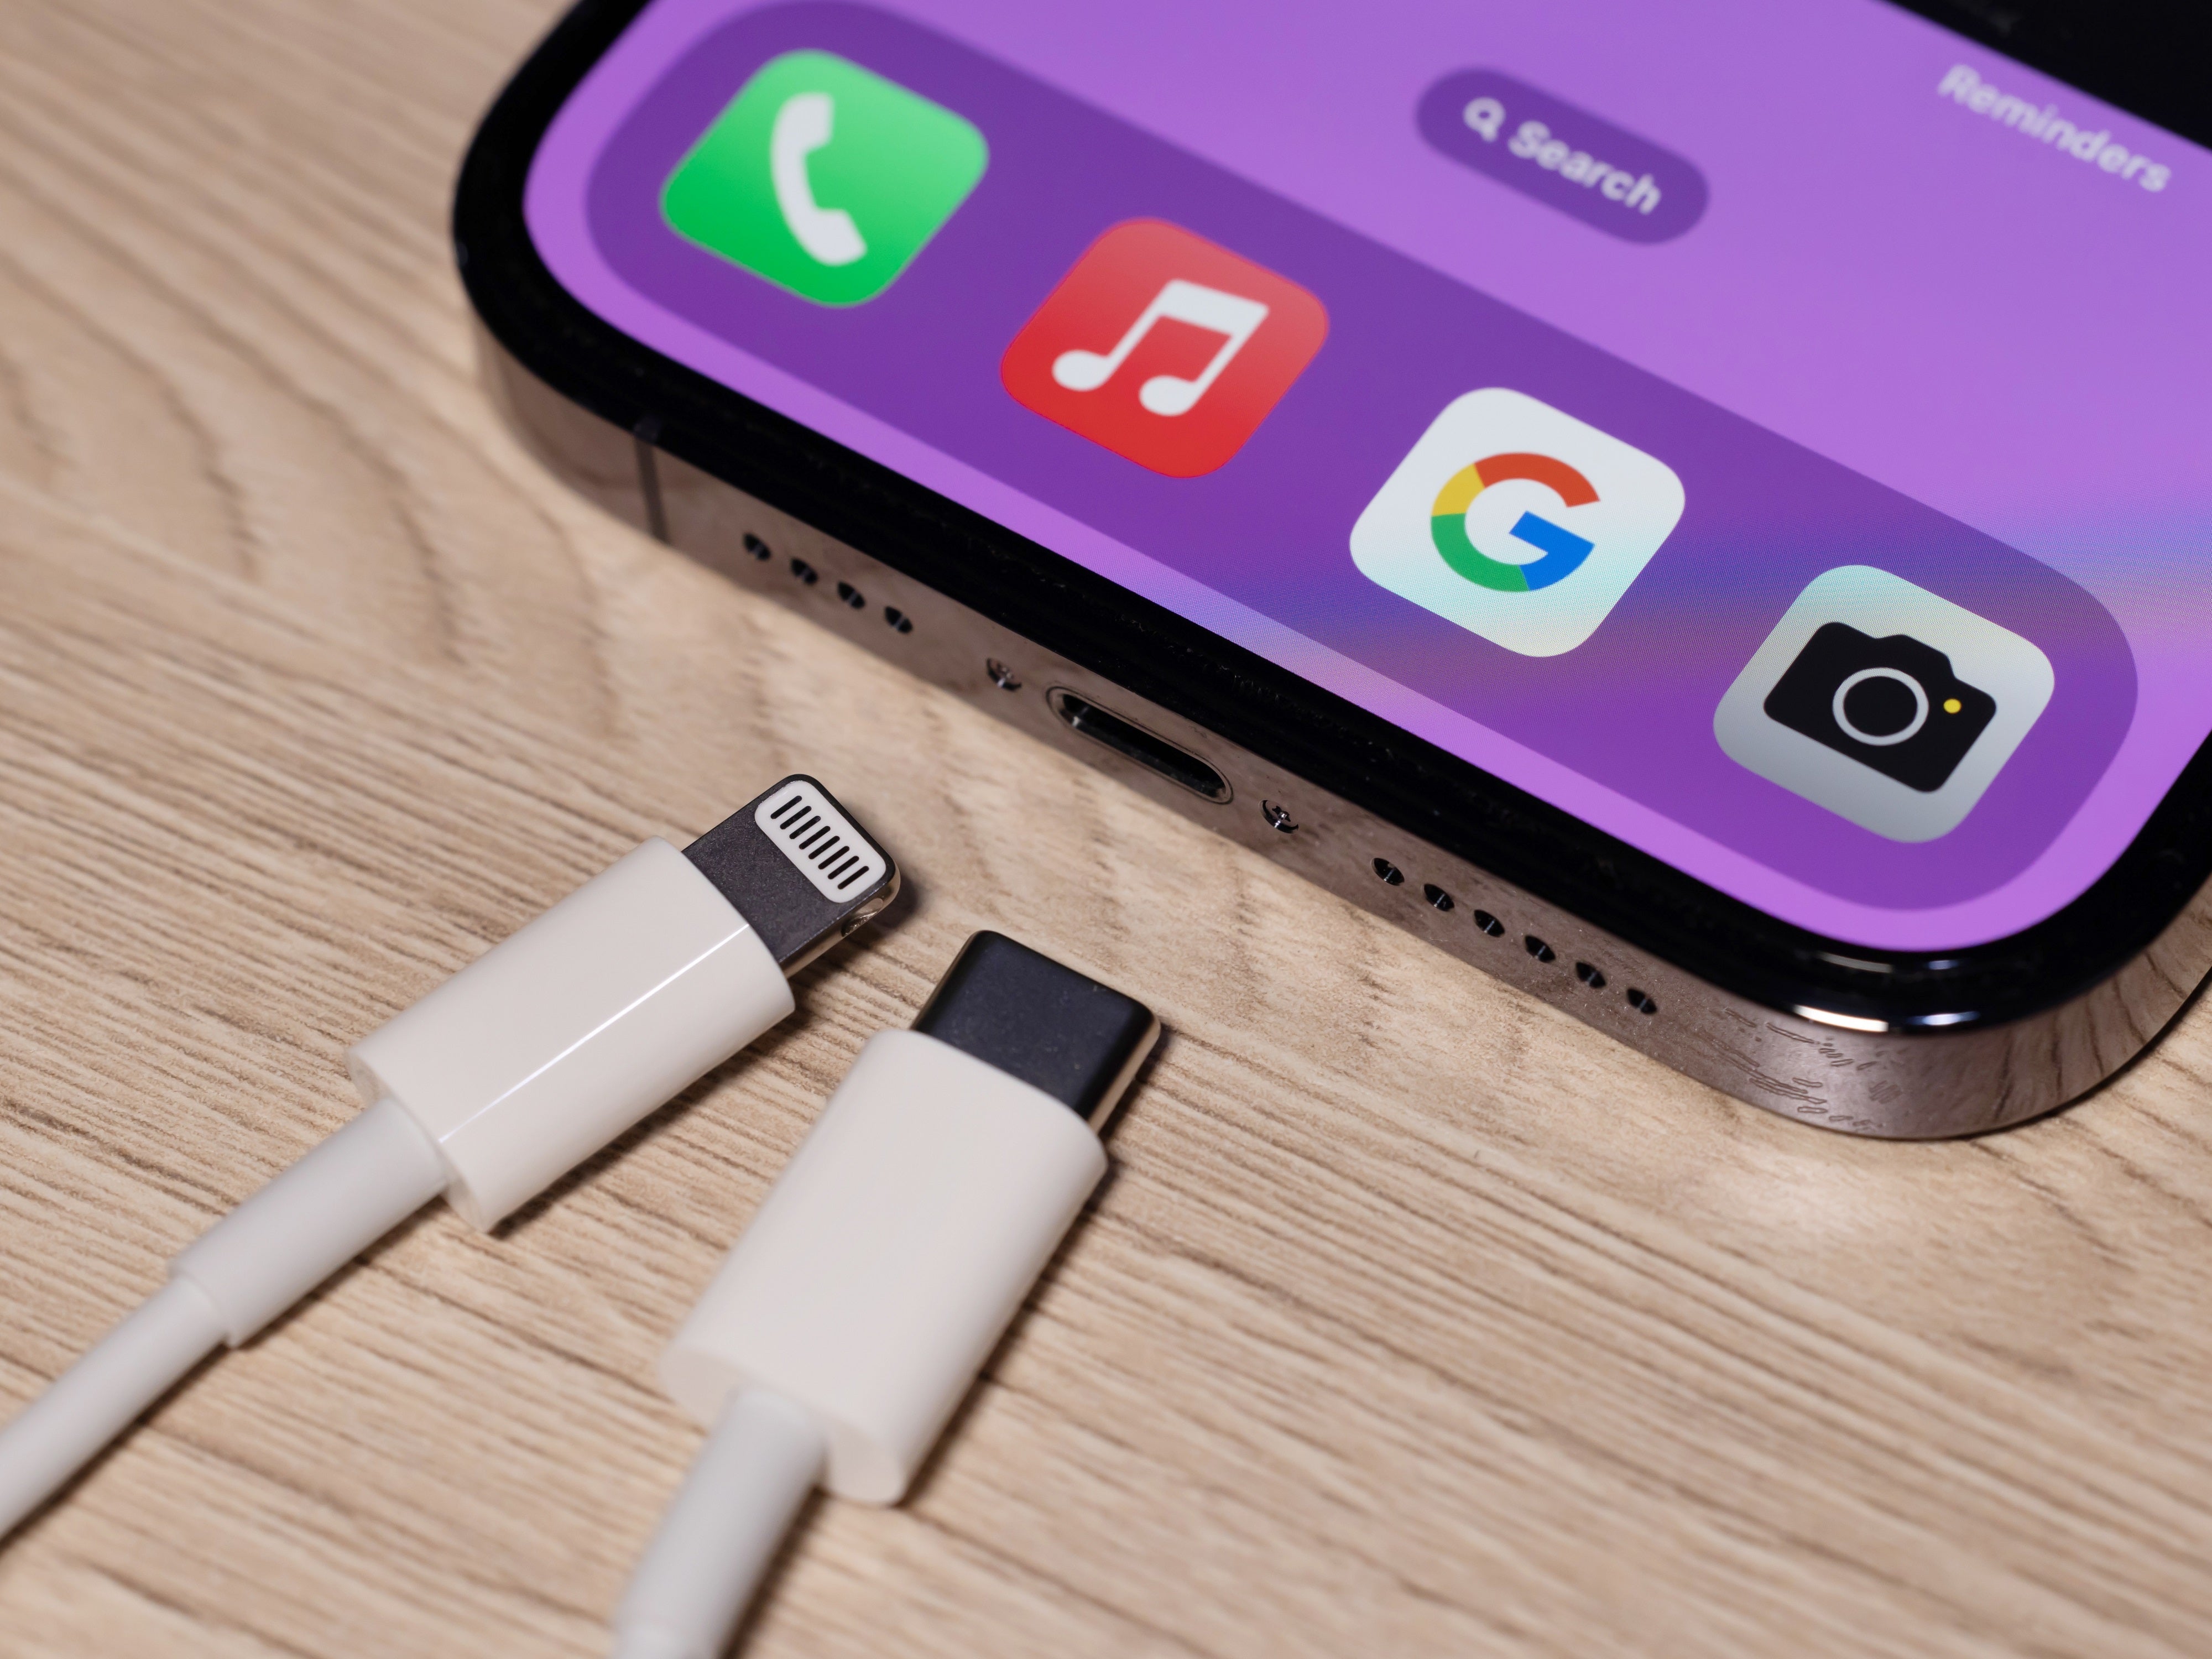 Apple überlistet die EU: USB-C-Regelung ergibt keinen Sinn mehr